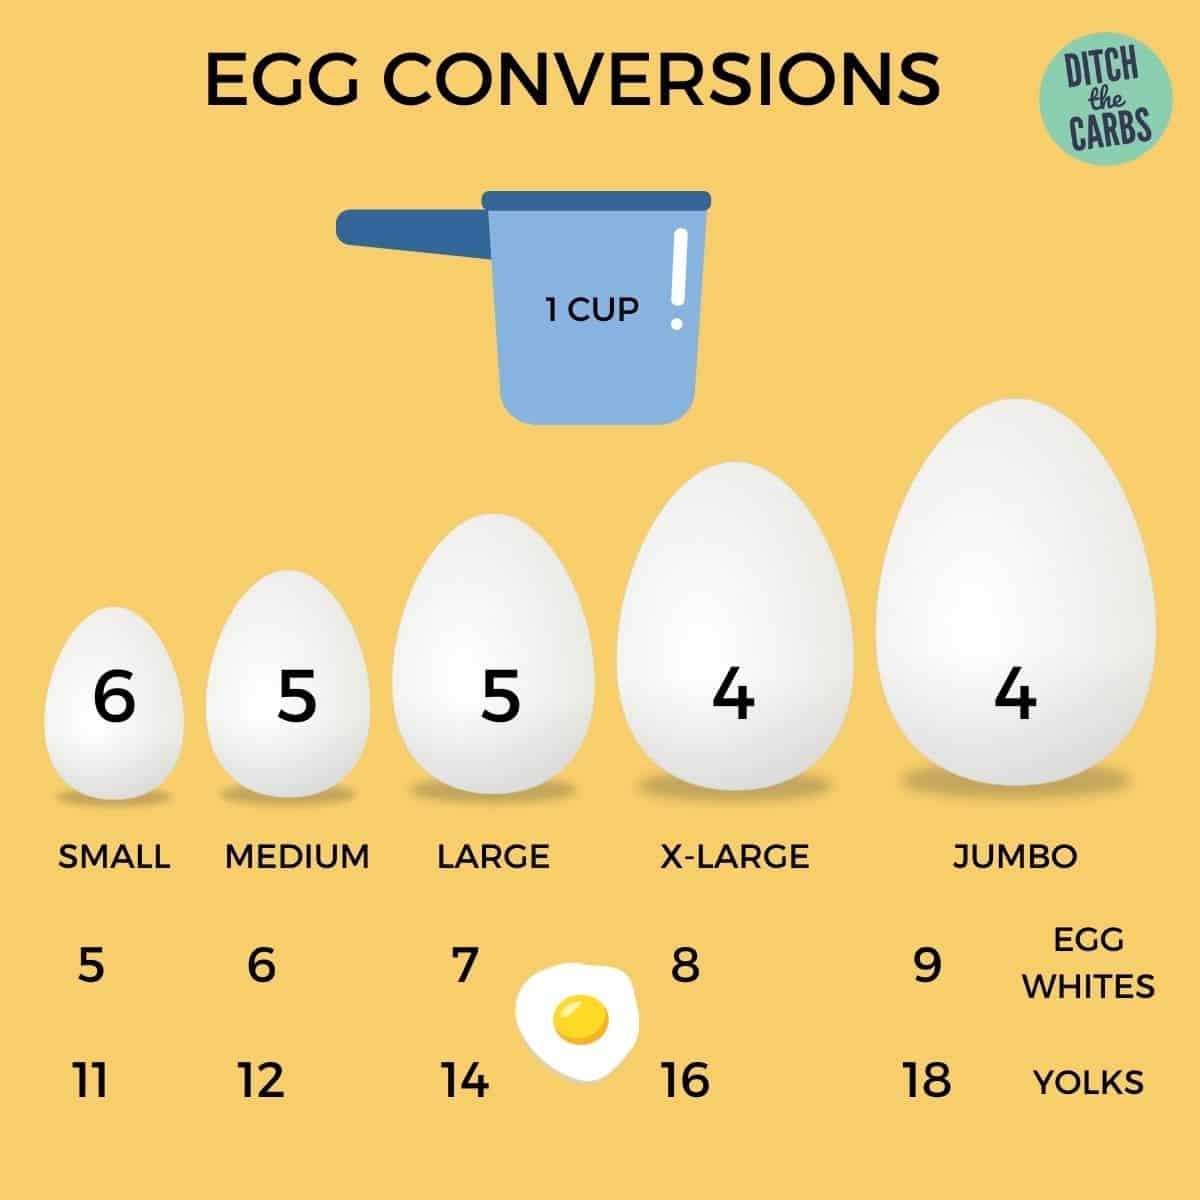 Tablas de conversión de huevos por taza de huevos